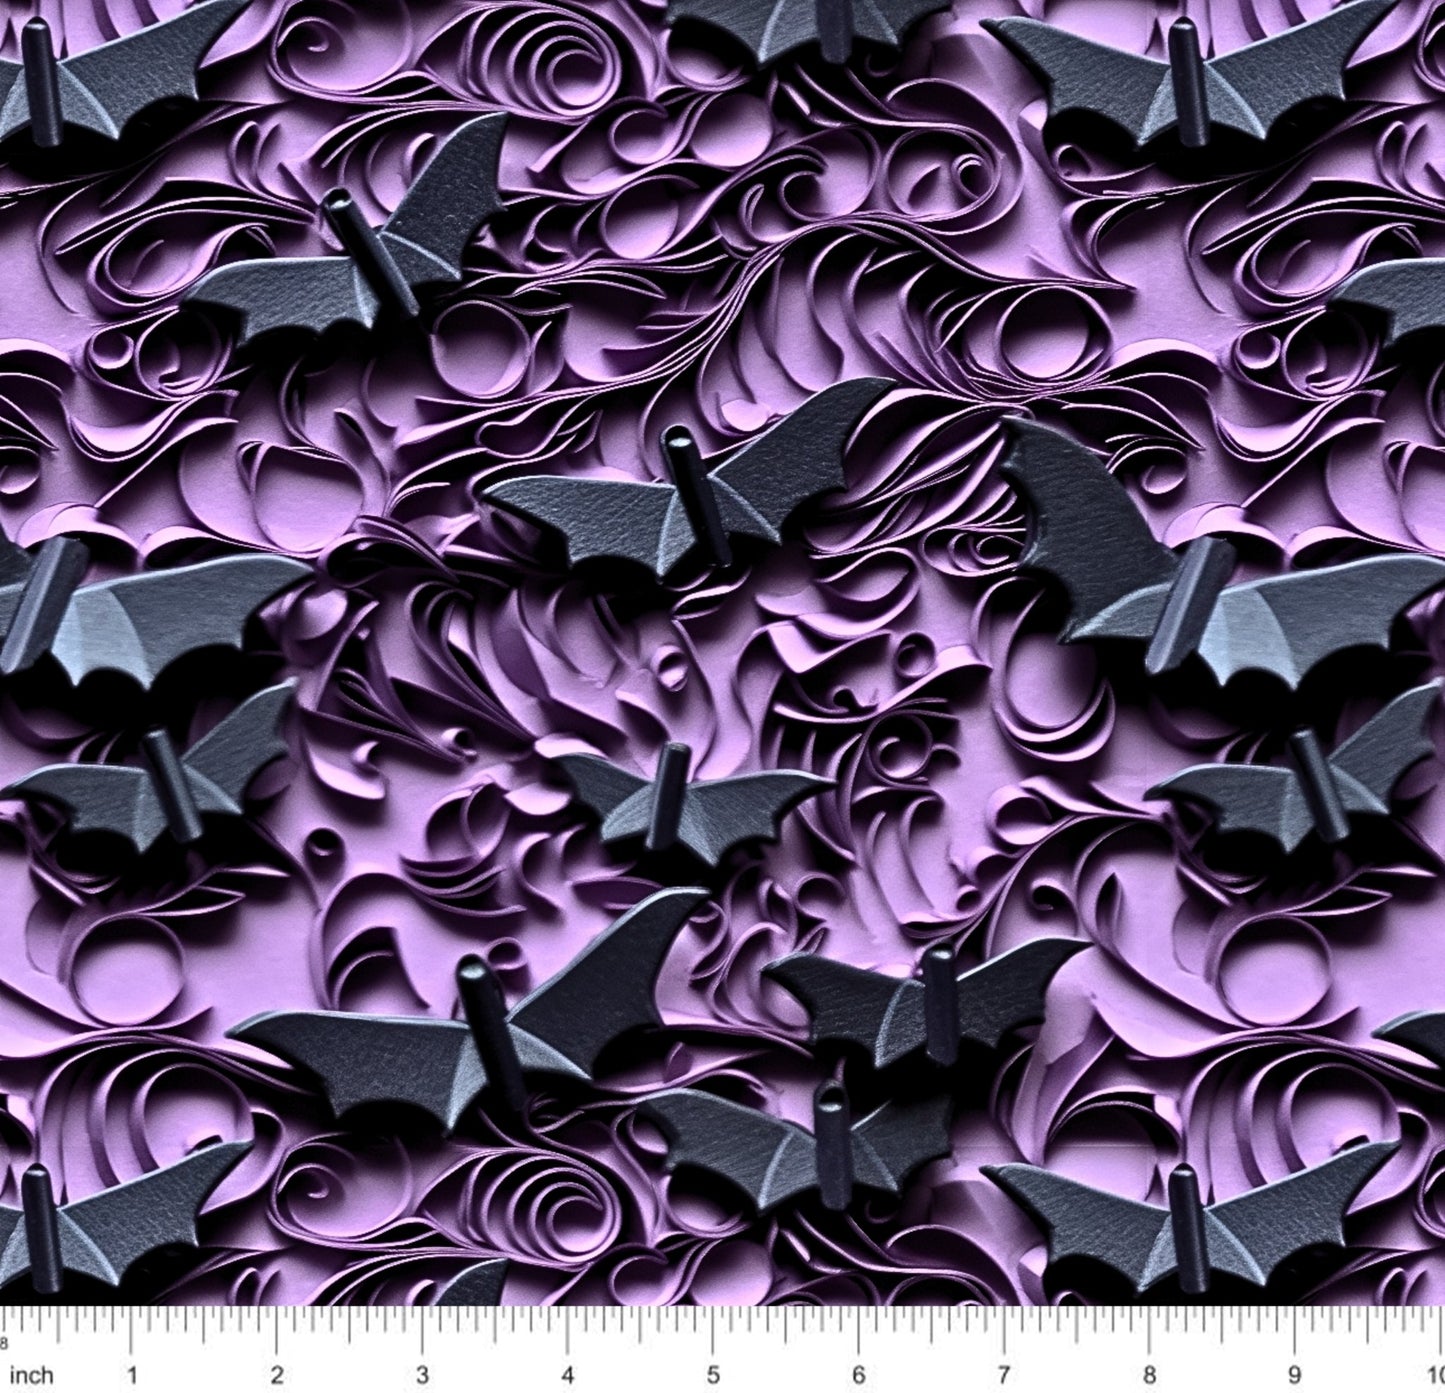 Bonnie's Boujee Designs - Bats on Purple - 3D Look - Little Rhody Sewing Co.